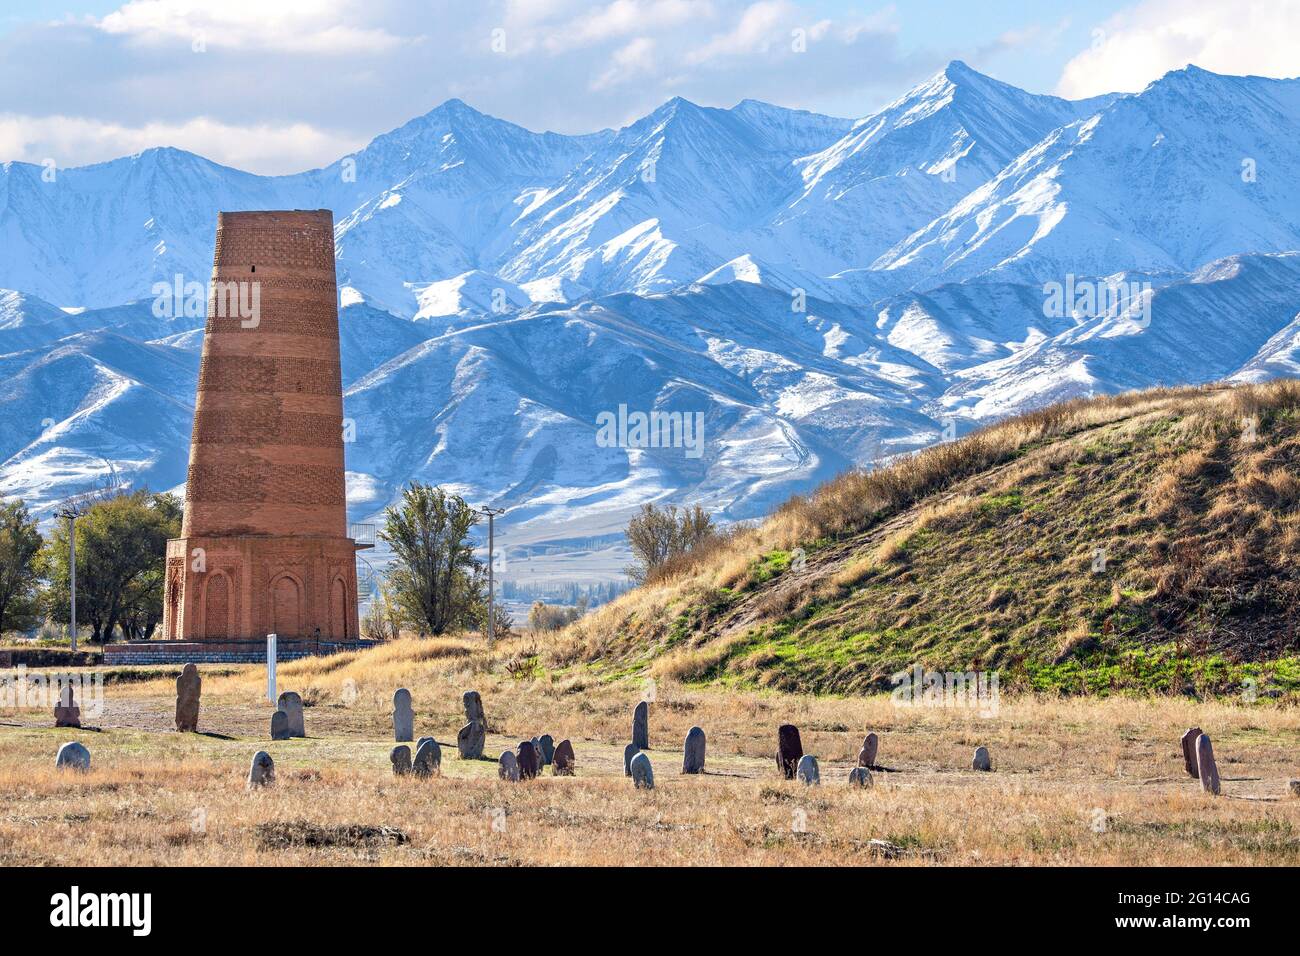 Burana Turm, ein historisches Minarett in den Ruinen der antiken Stätte von Balasagun mit Grabsteinen, die als Balbas im Vordergrund, Kirgisistan, bekannt sind Stockfoto